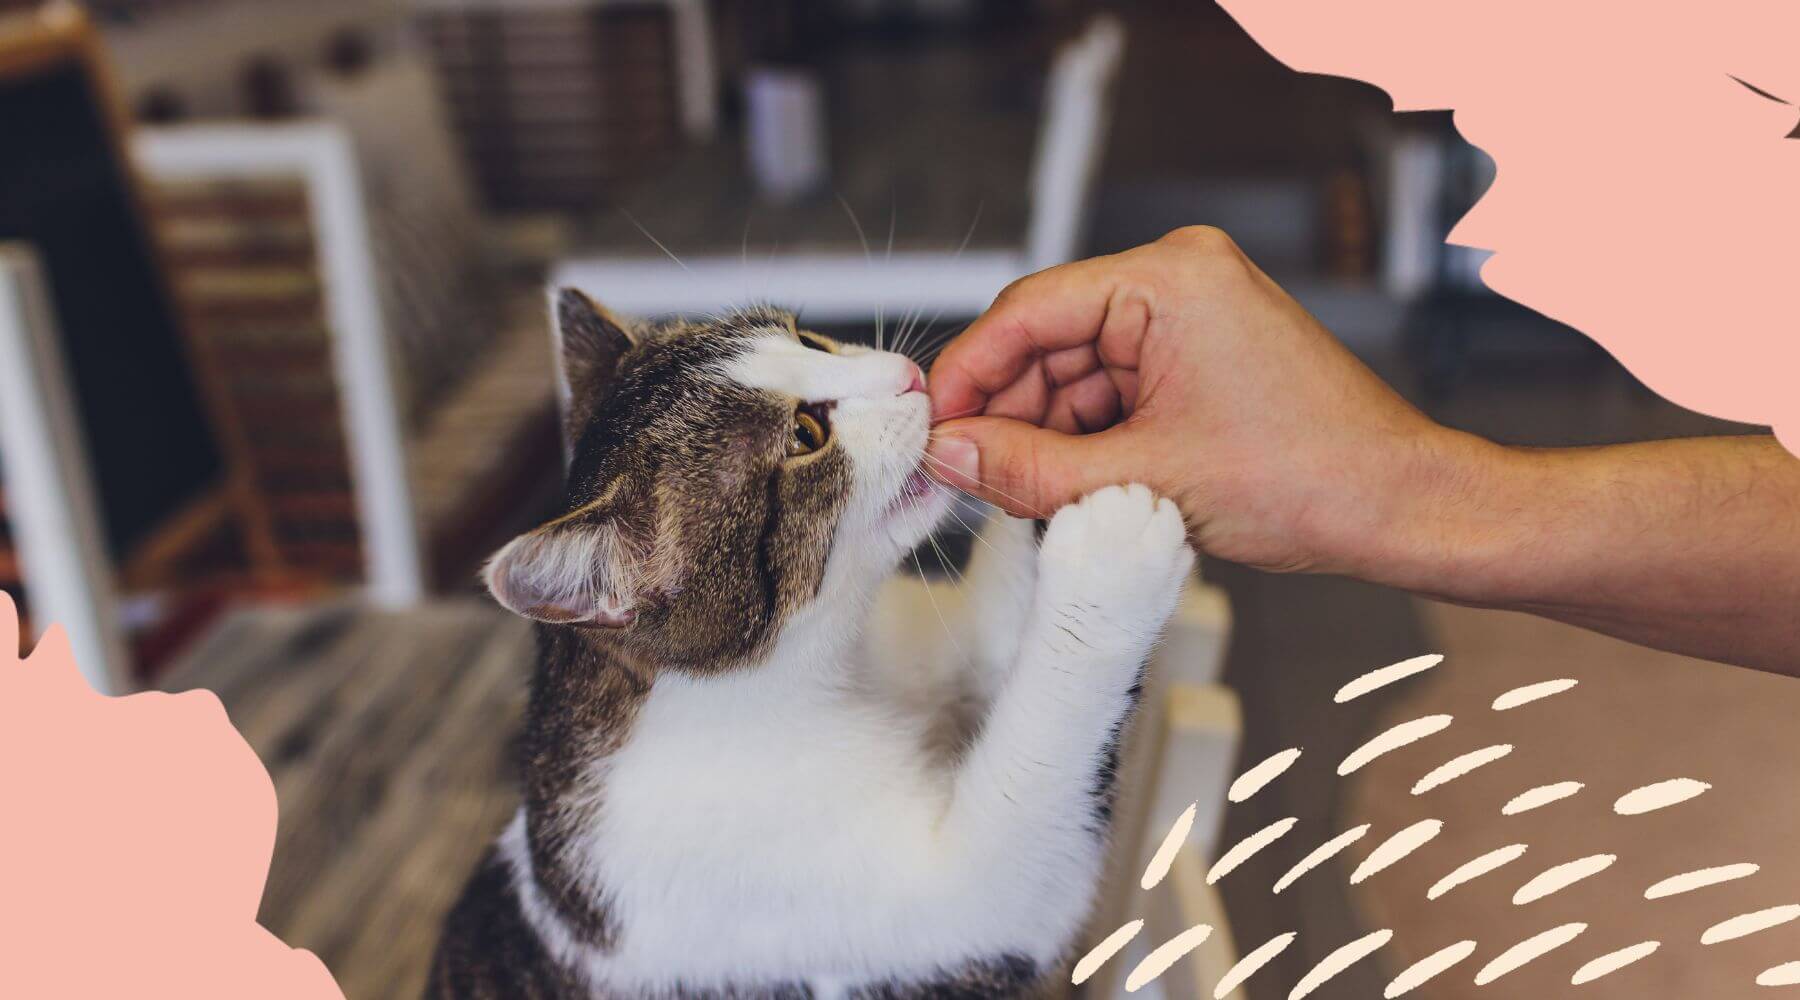 Katze frisst Snack aus der Hand.